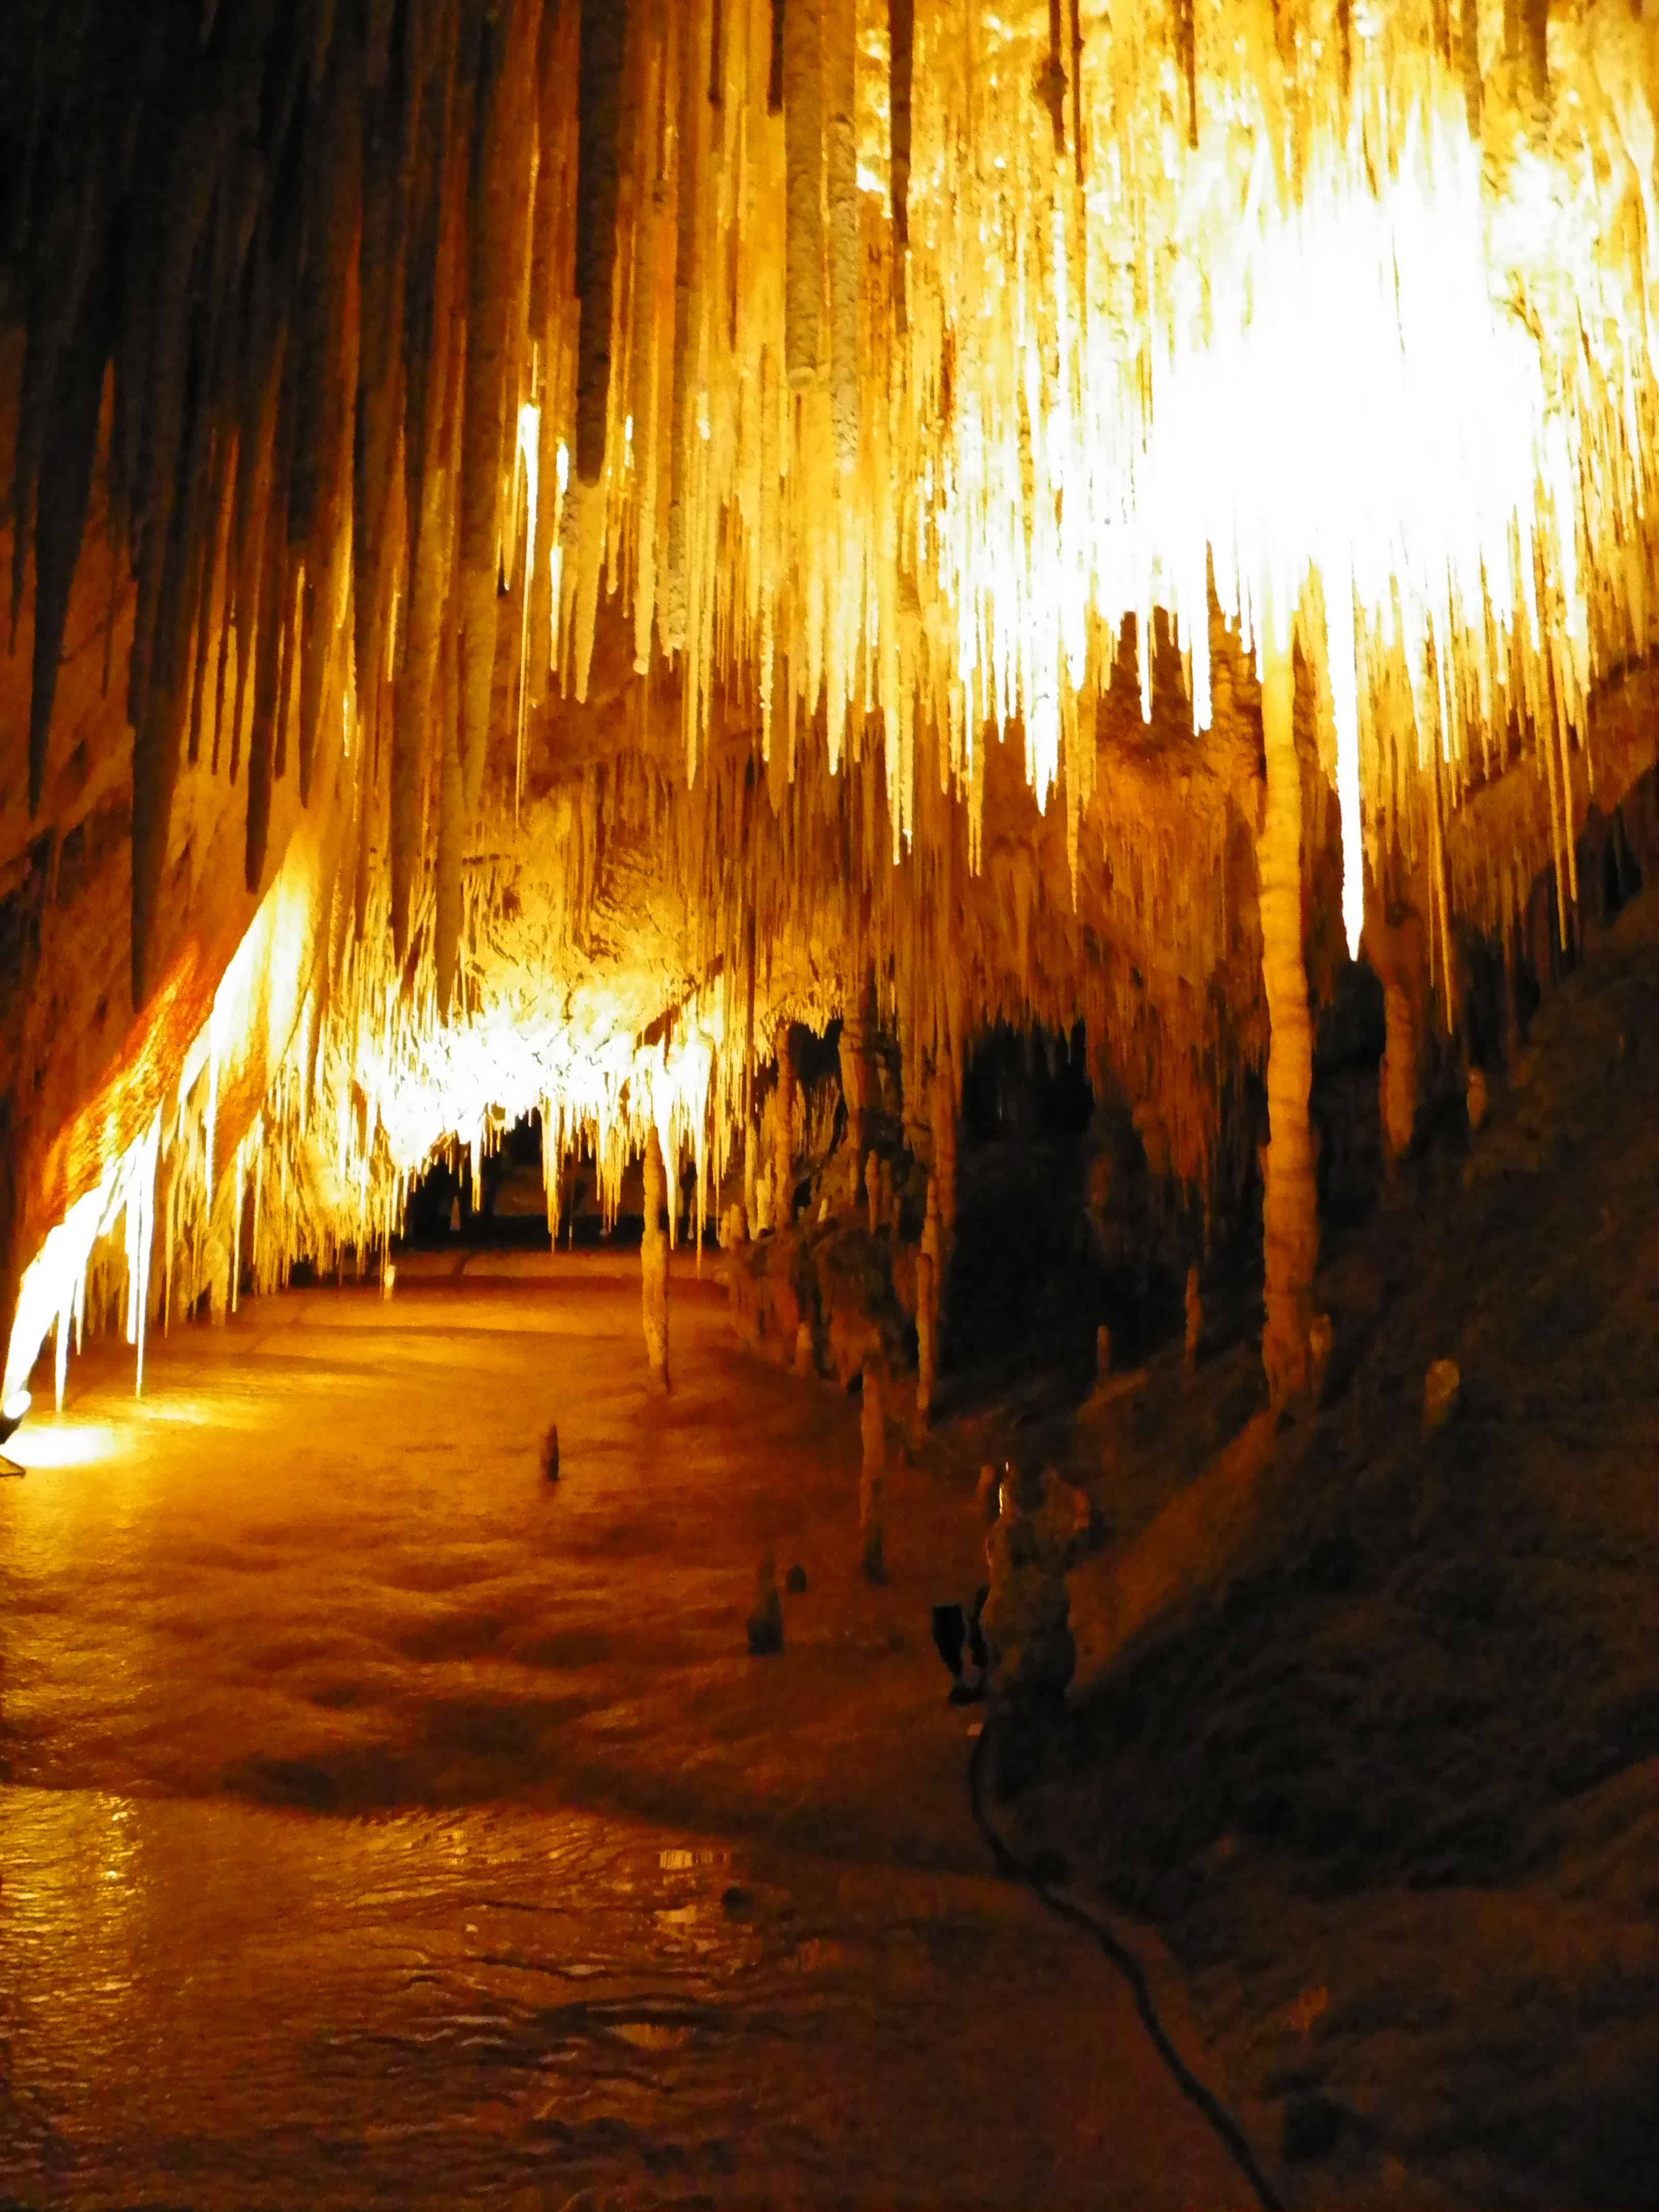 Underground Caves in Australia -Hastings Cave